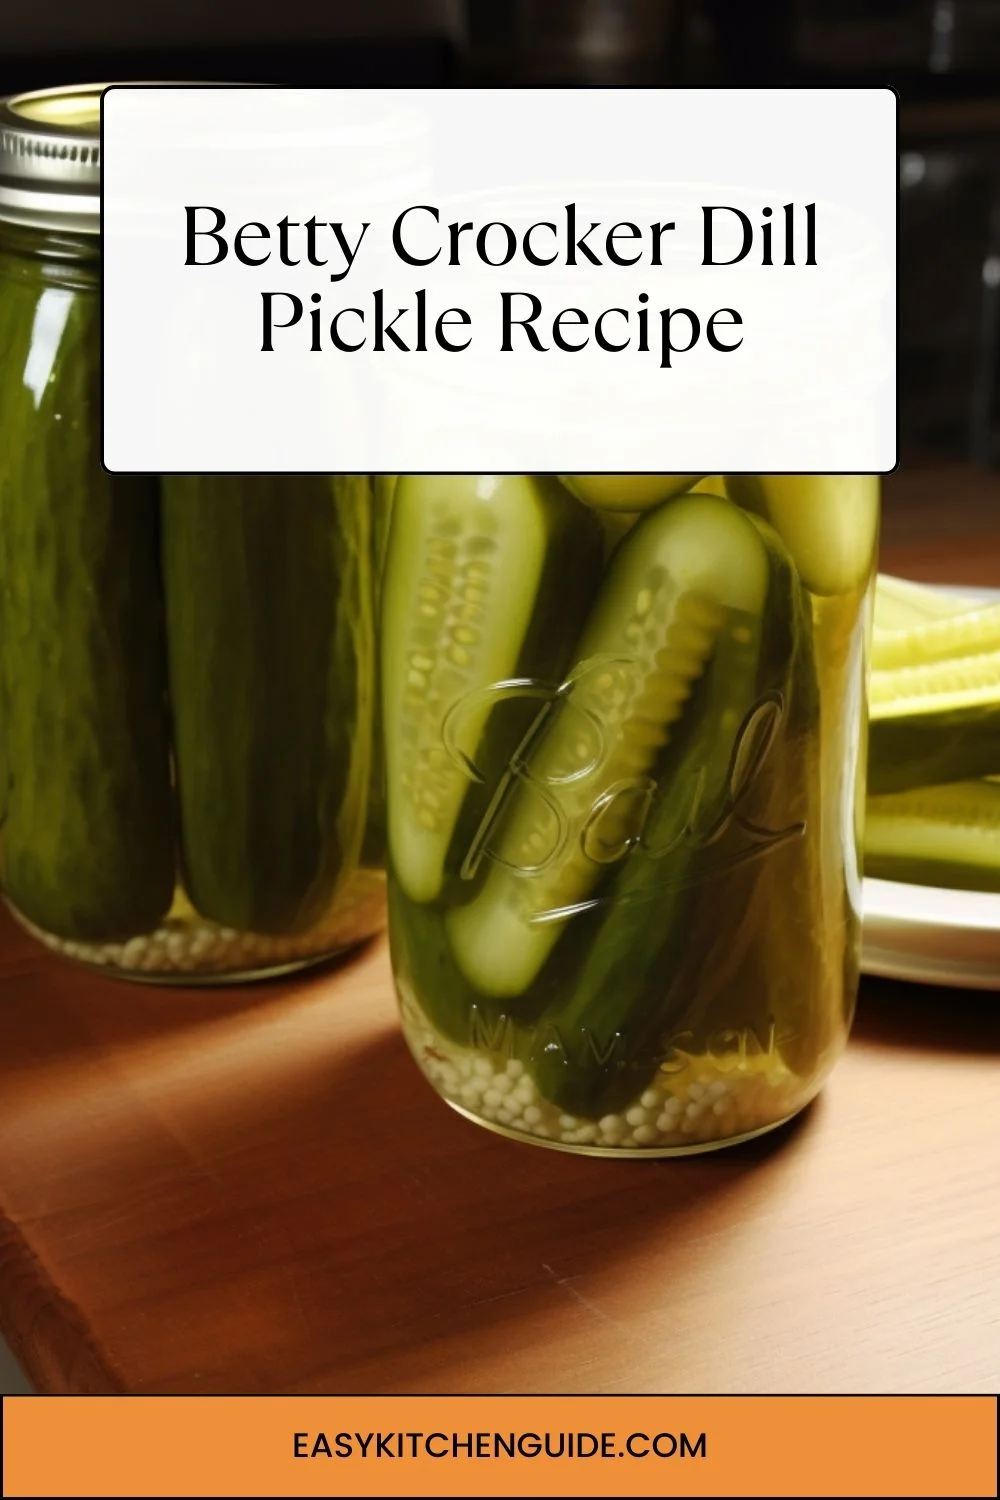 Betty Crocker Dill Pickle Recipe